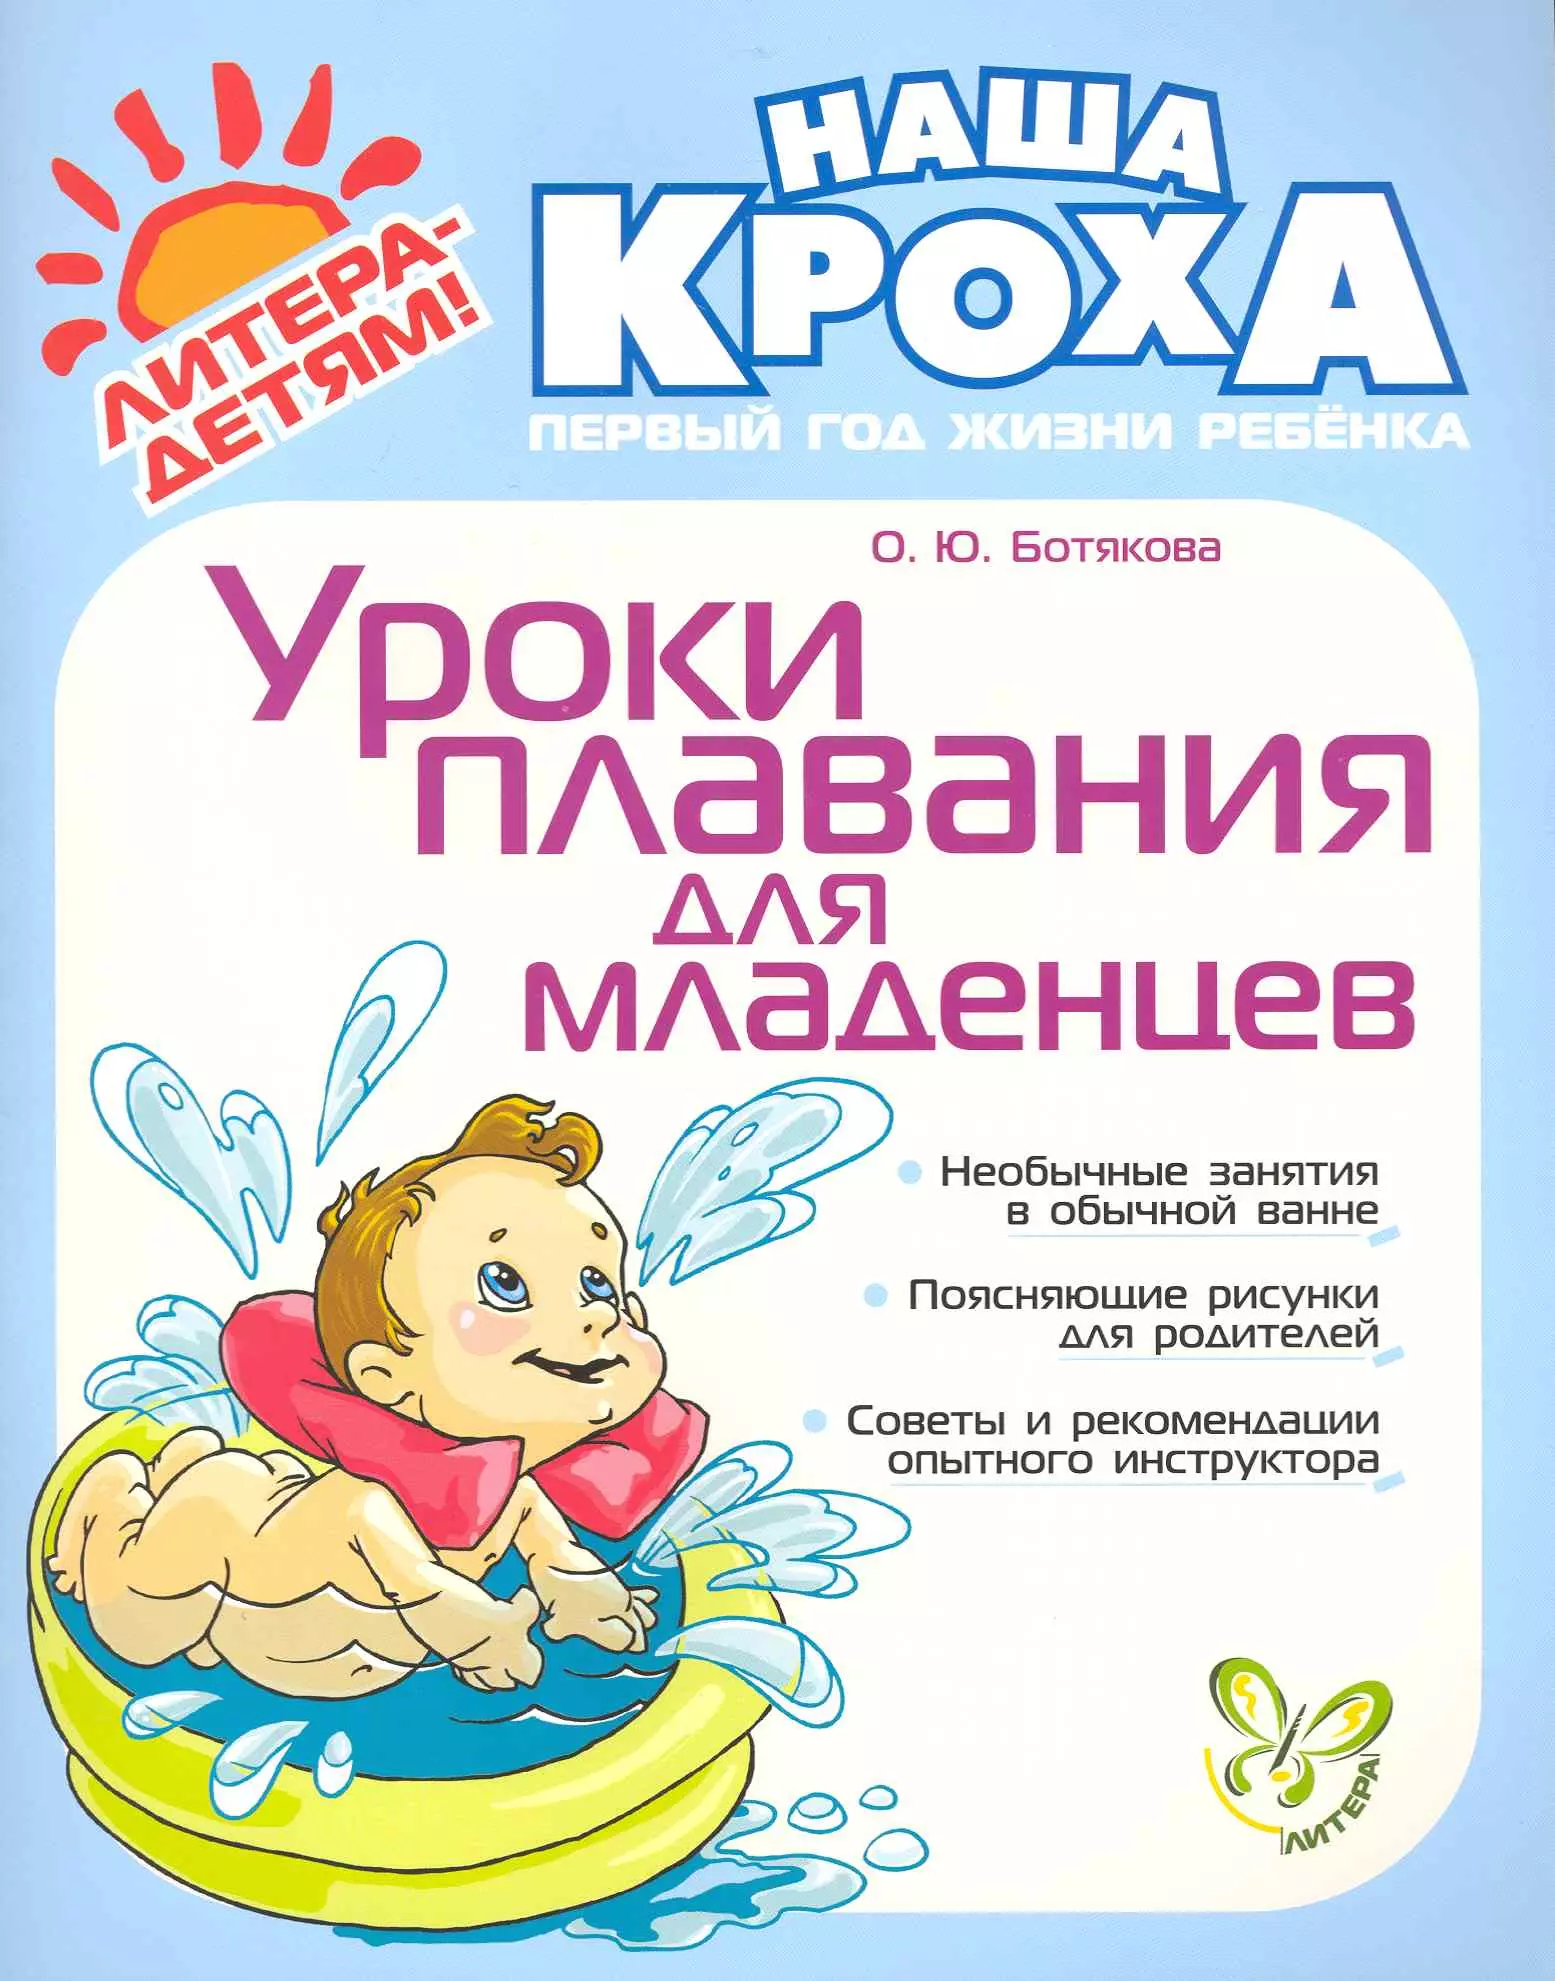 Ботякова Ольга Юрьевна - Уроки плавания для младенцев